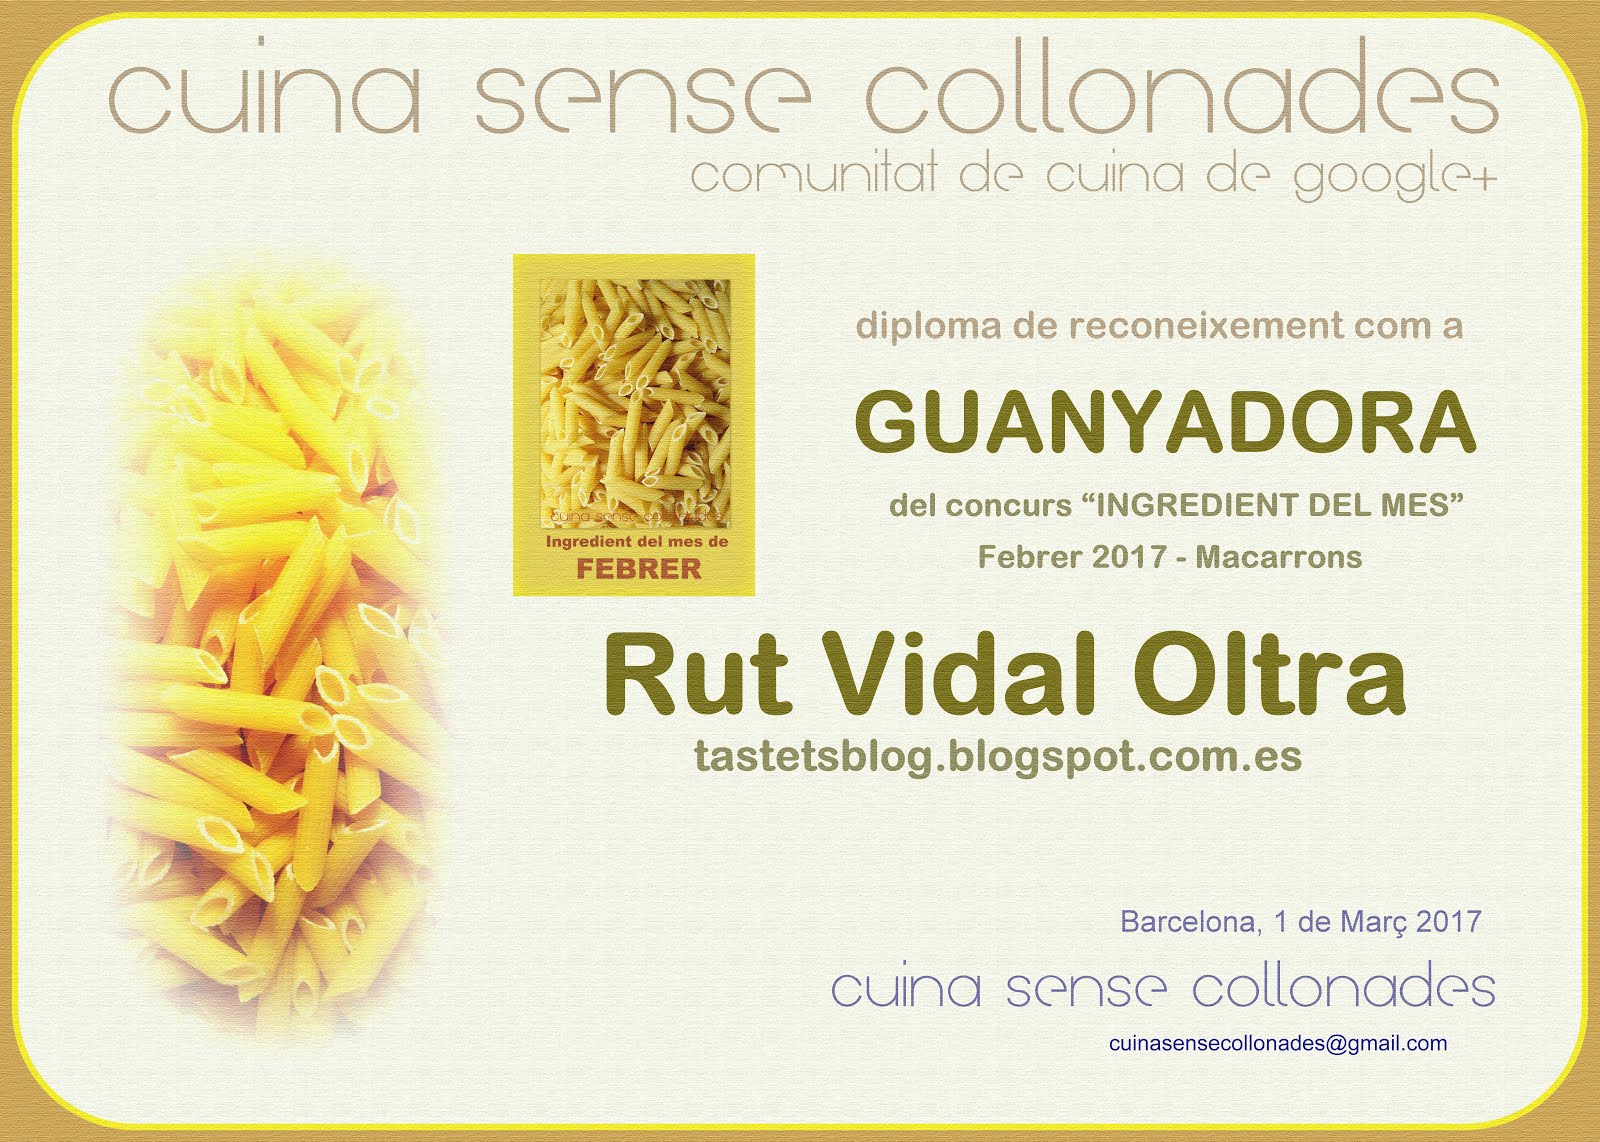 Guanyadora del concurs "Ingredient del mes, macarrons" de Cuina sense collonades el febrer de 2017